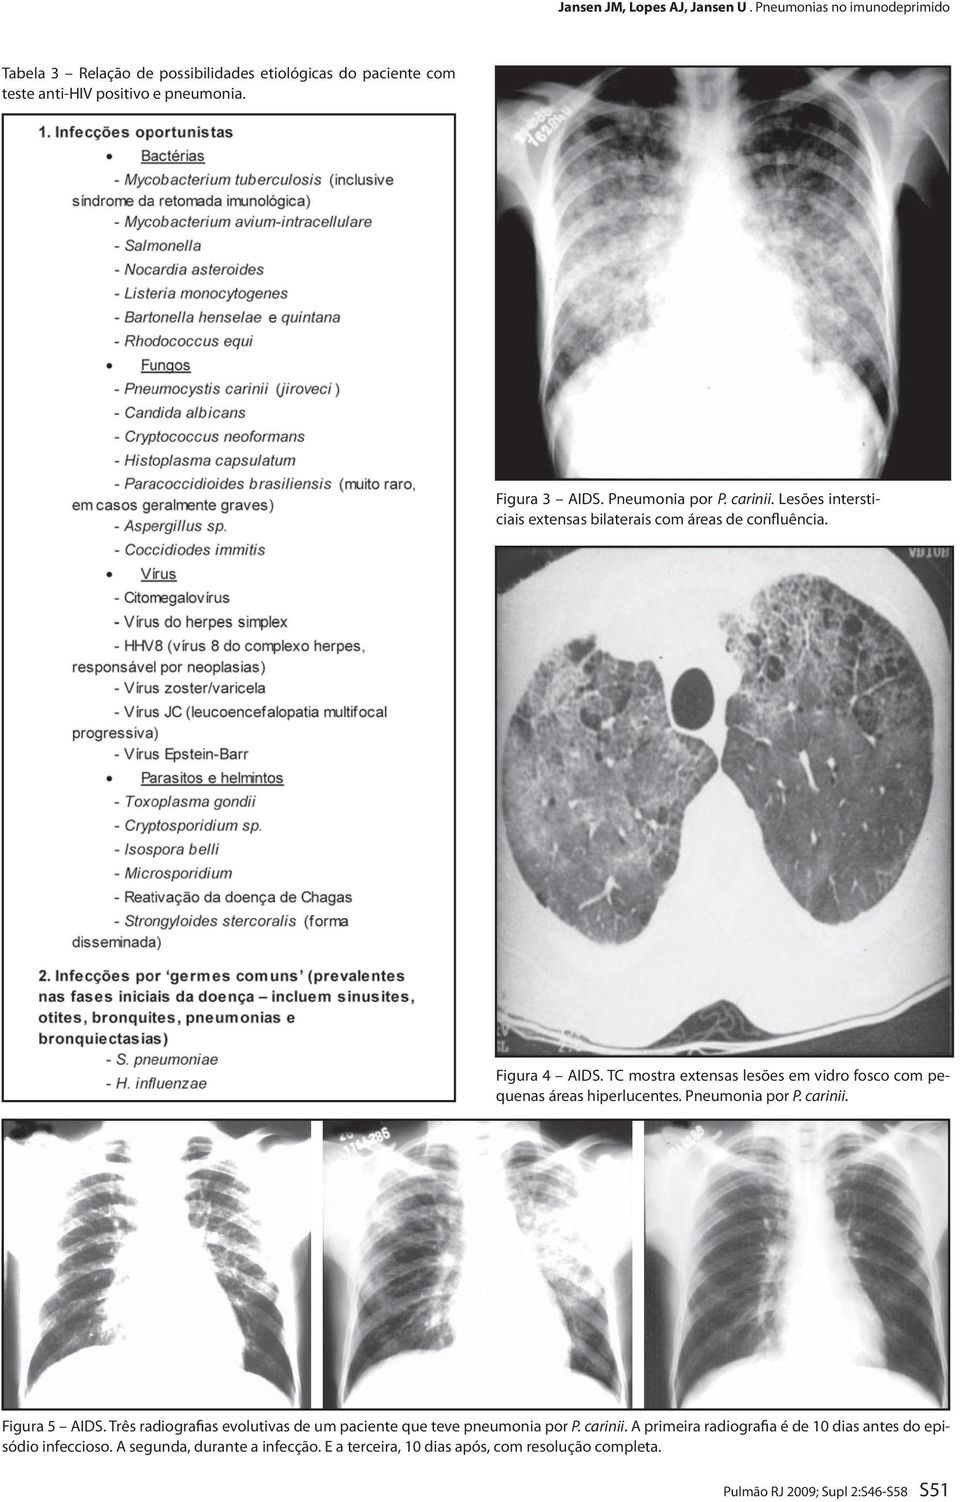 TC mostra extensas lesões em vidro fosco com pequenas áreas hiperlucentes. Pneumonia por P. carinii. Figura 5 AIDS.